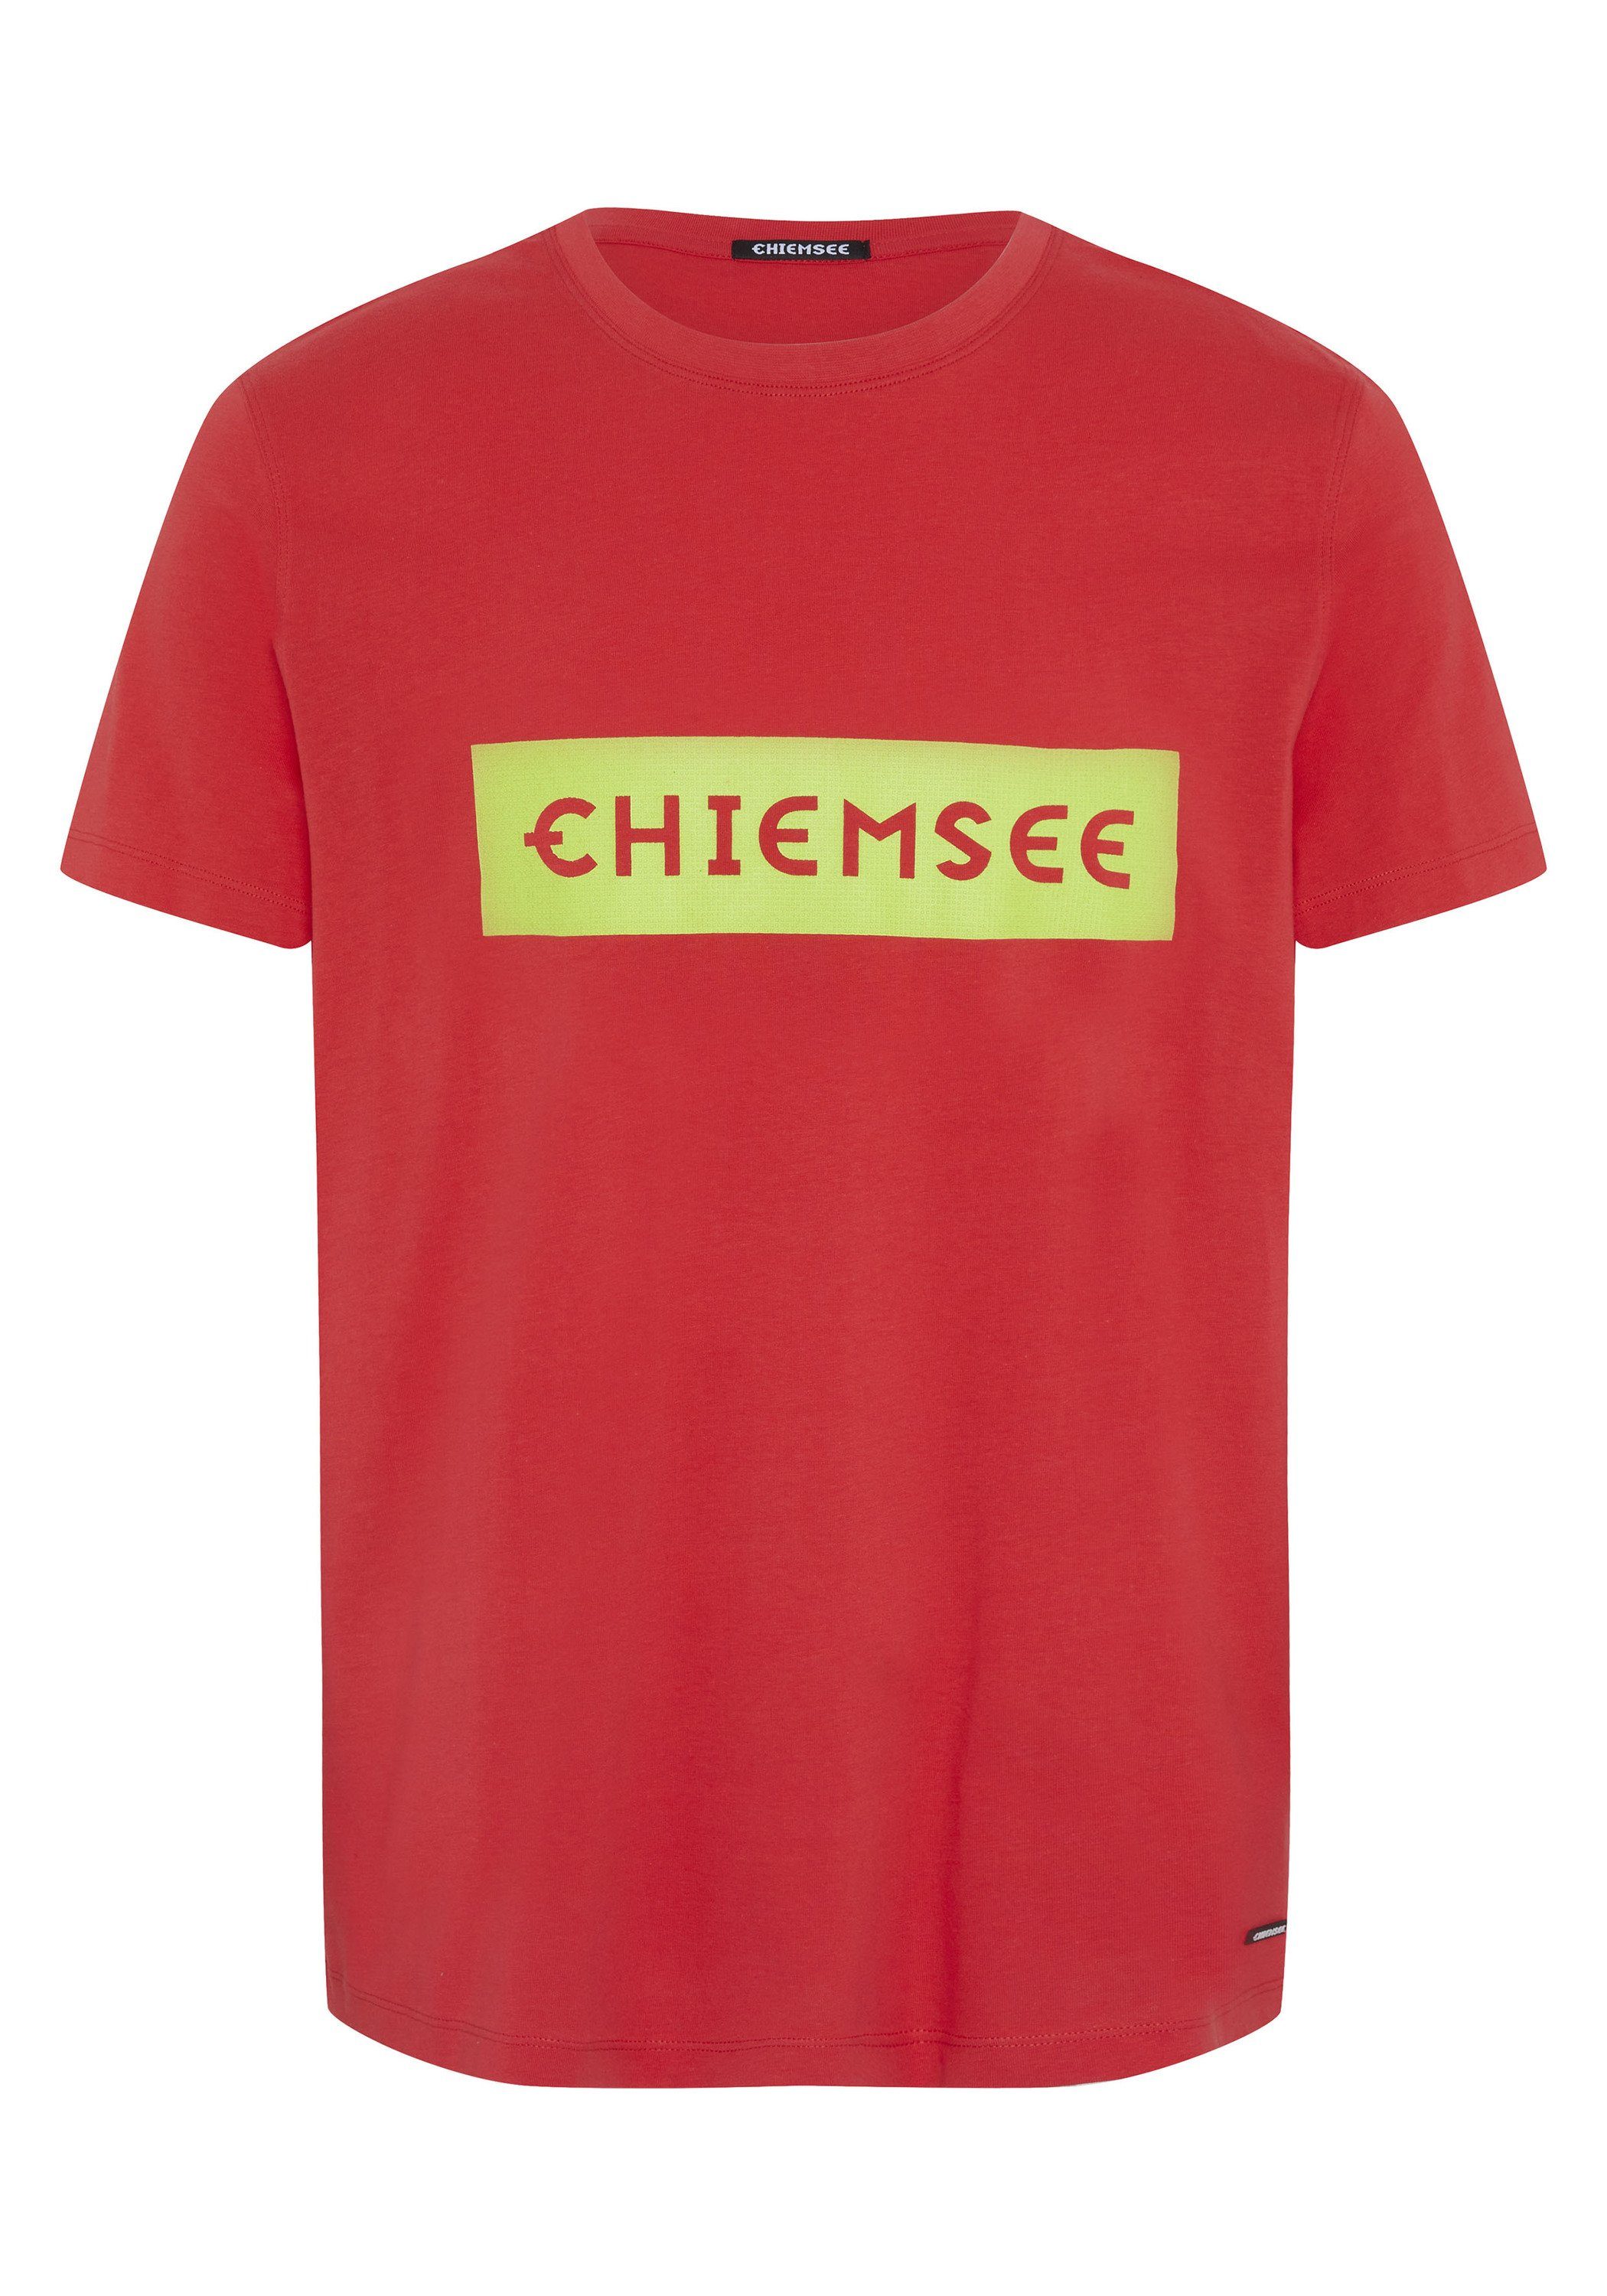 Chiemsee Print-Shirt T-Shirt mit plakativem Markenschriftzug 1 17-1663 Bittersweet